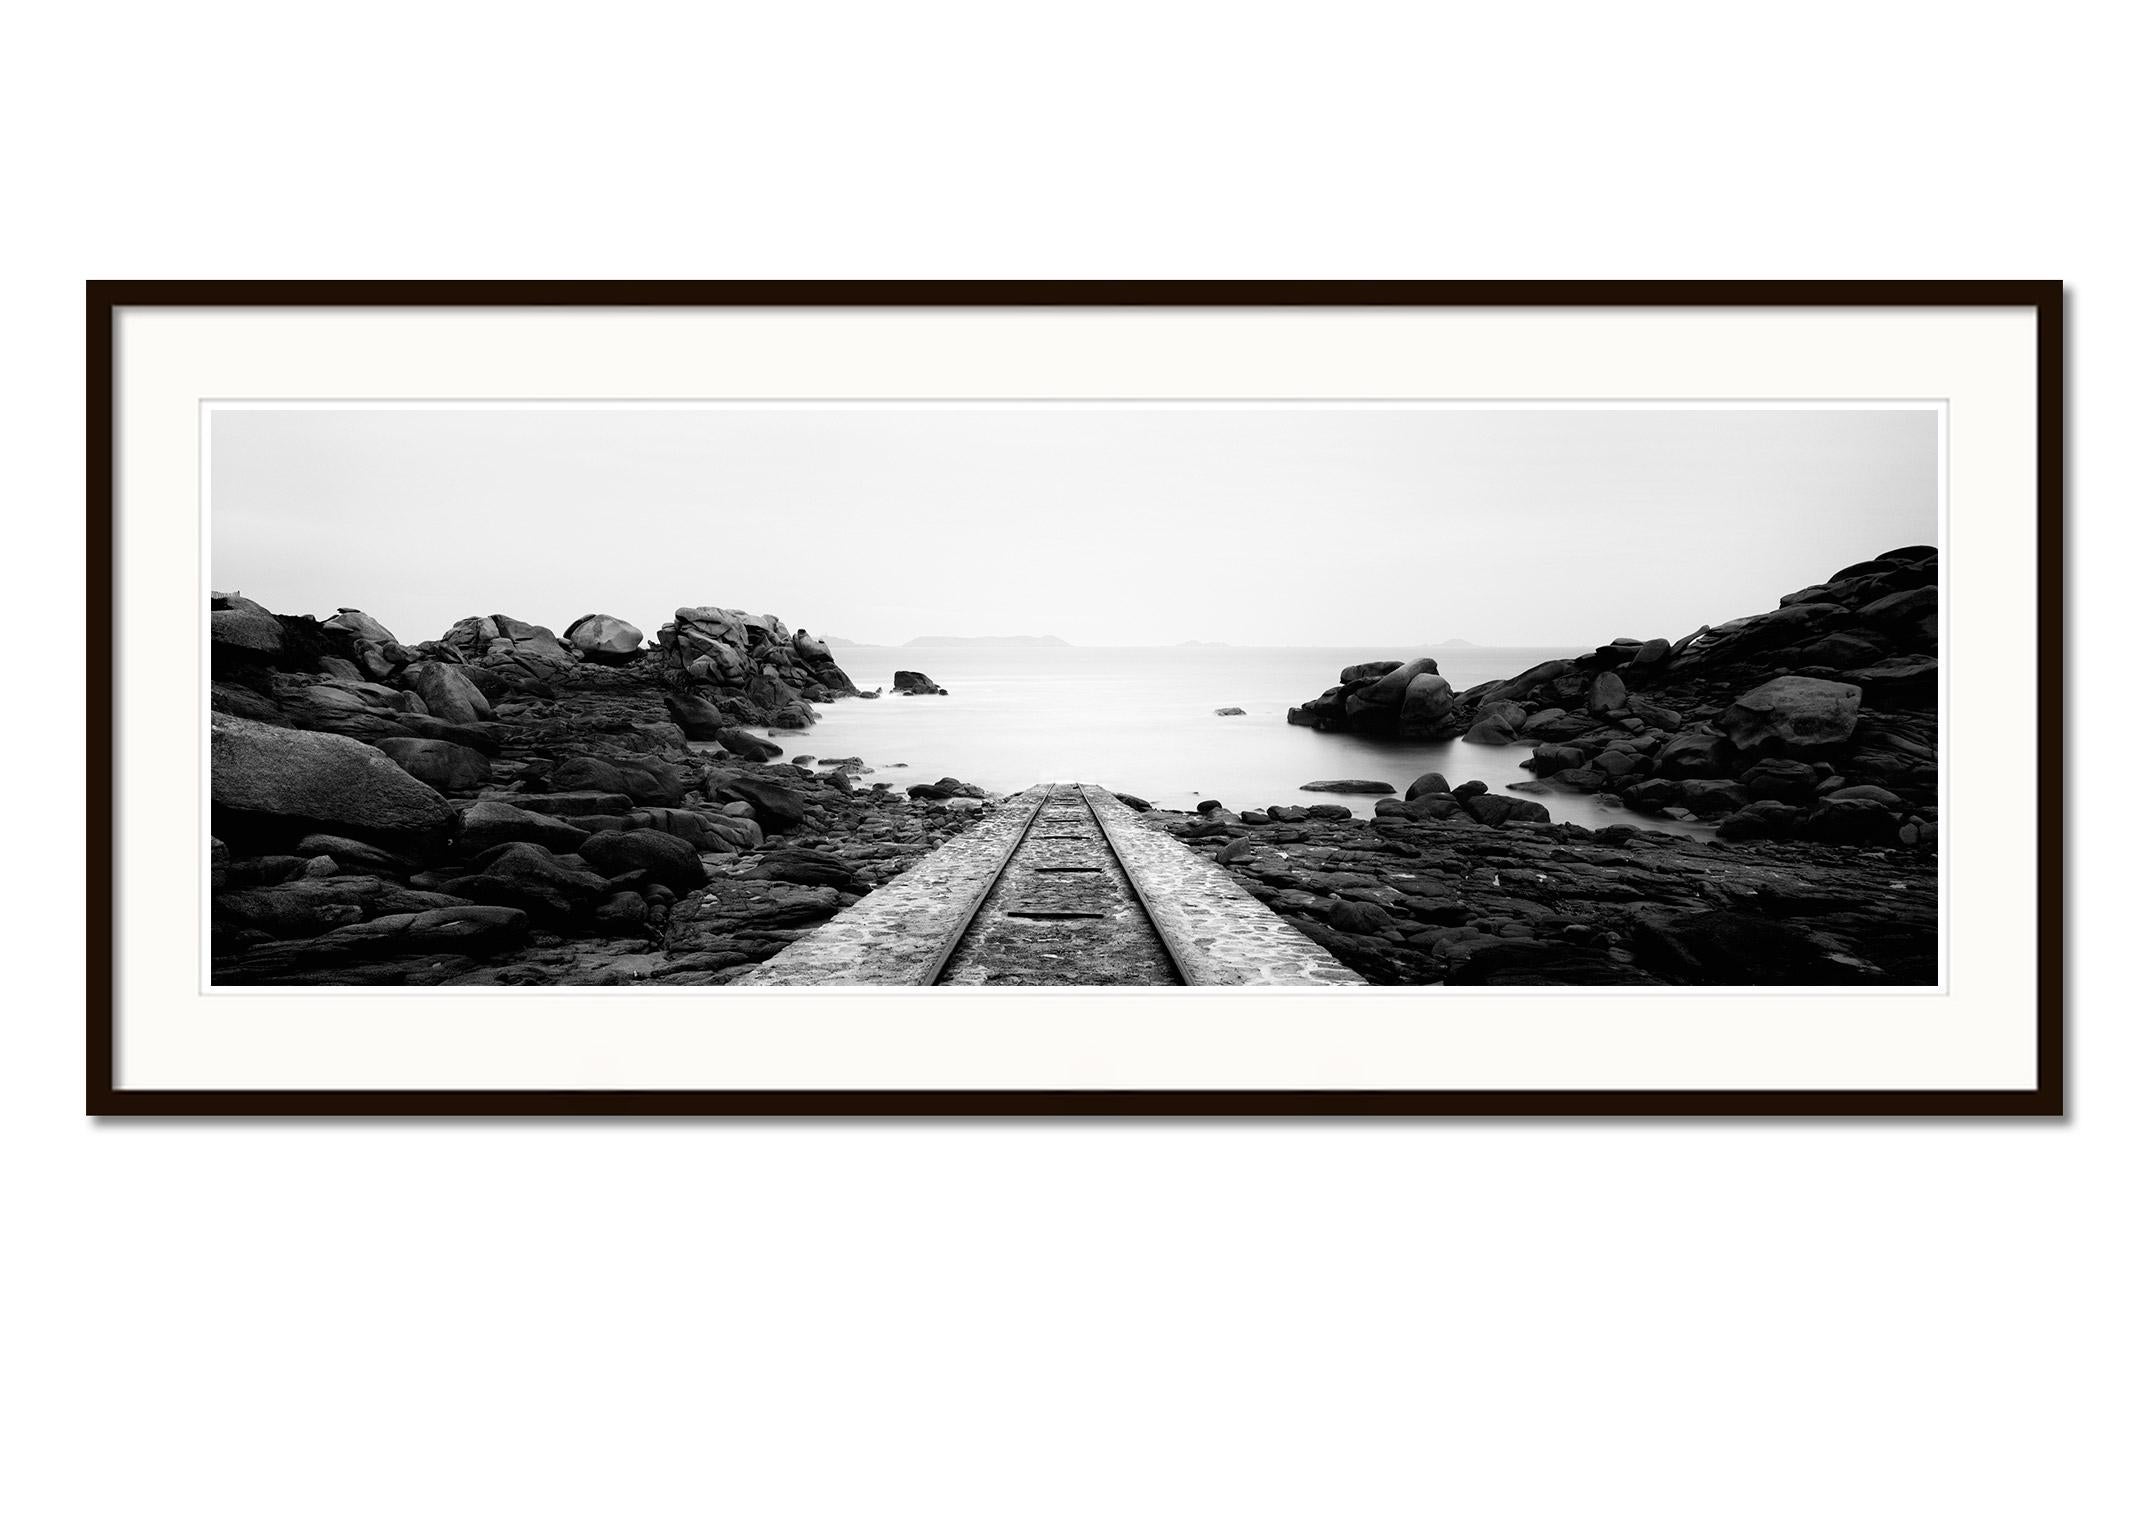 Into the Ocean railroad Atlantic Bay, Frankreich, Schwarz-Weiß-Landschaftsfotografie (Grau), Landscape Photograph, von Gerald Berghammer